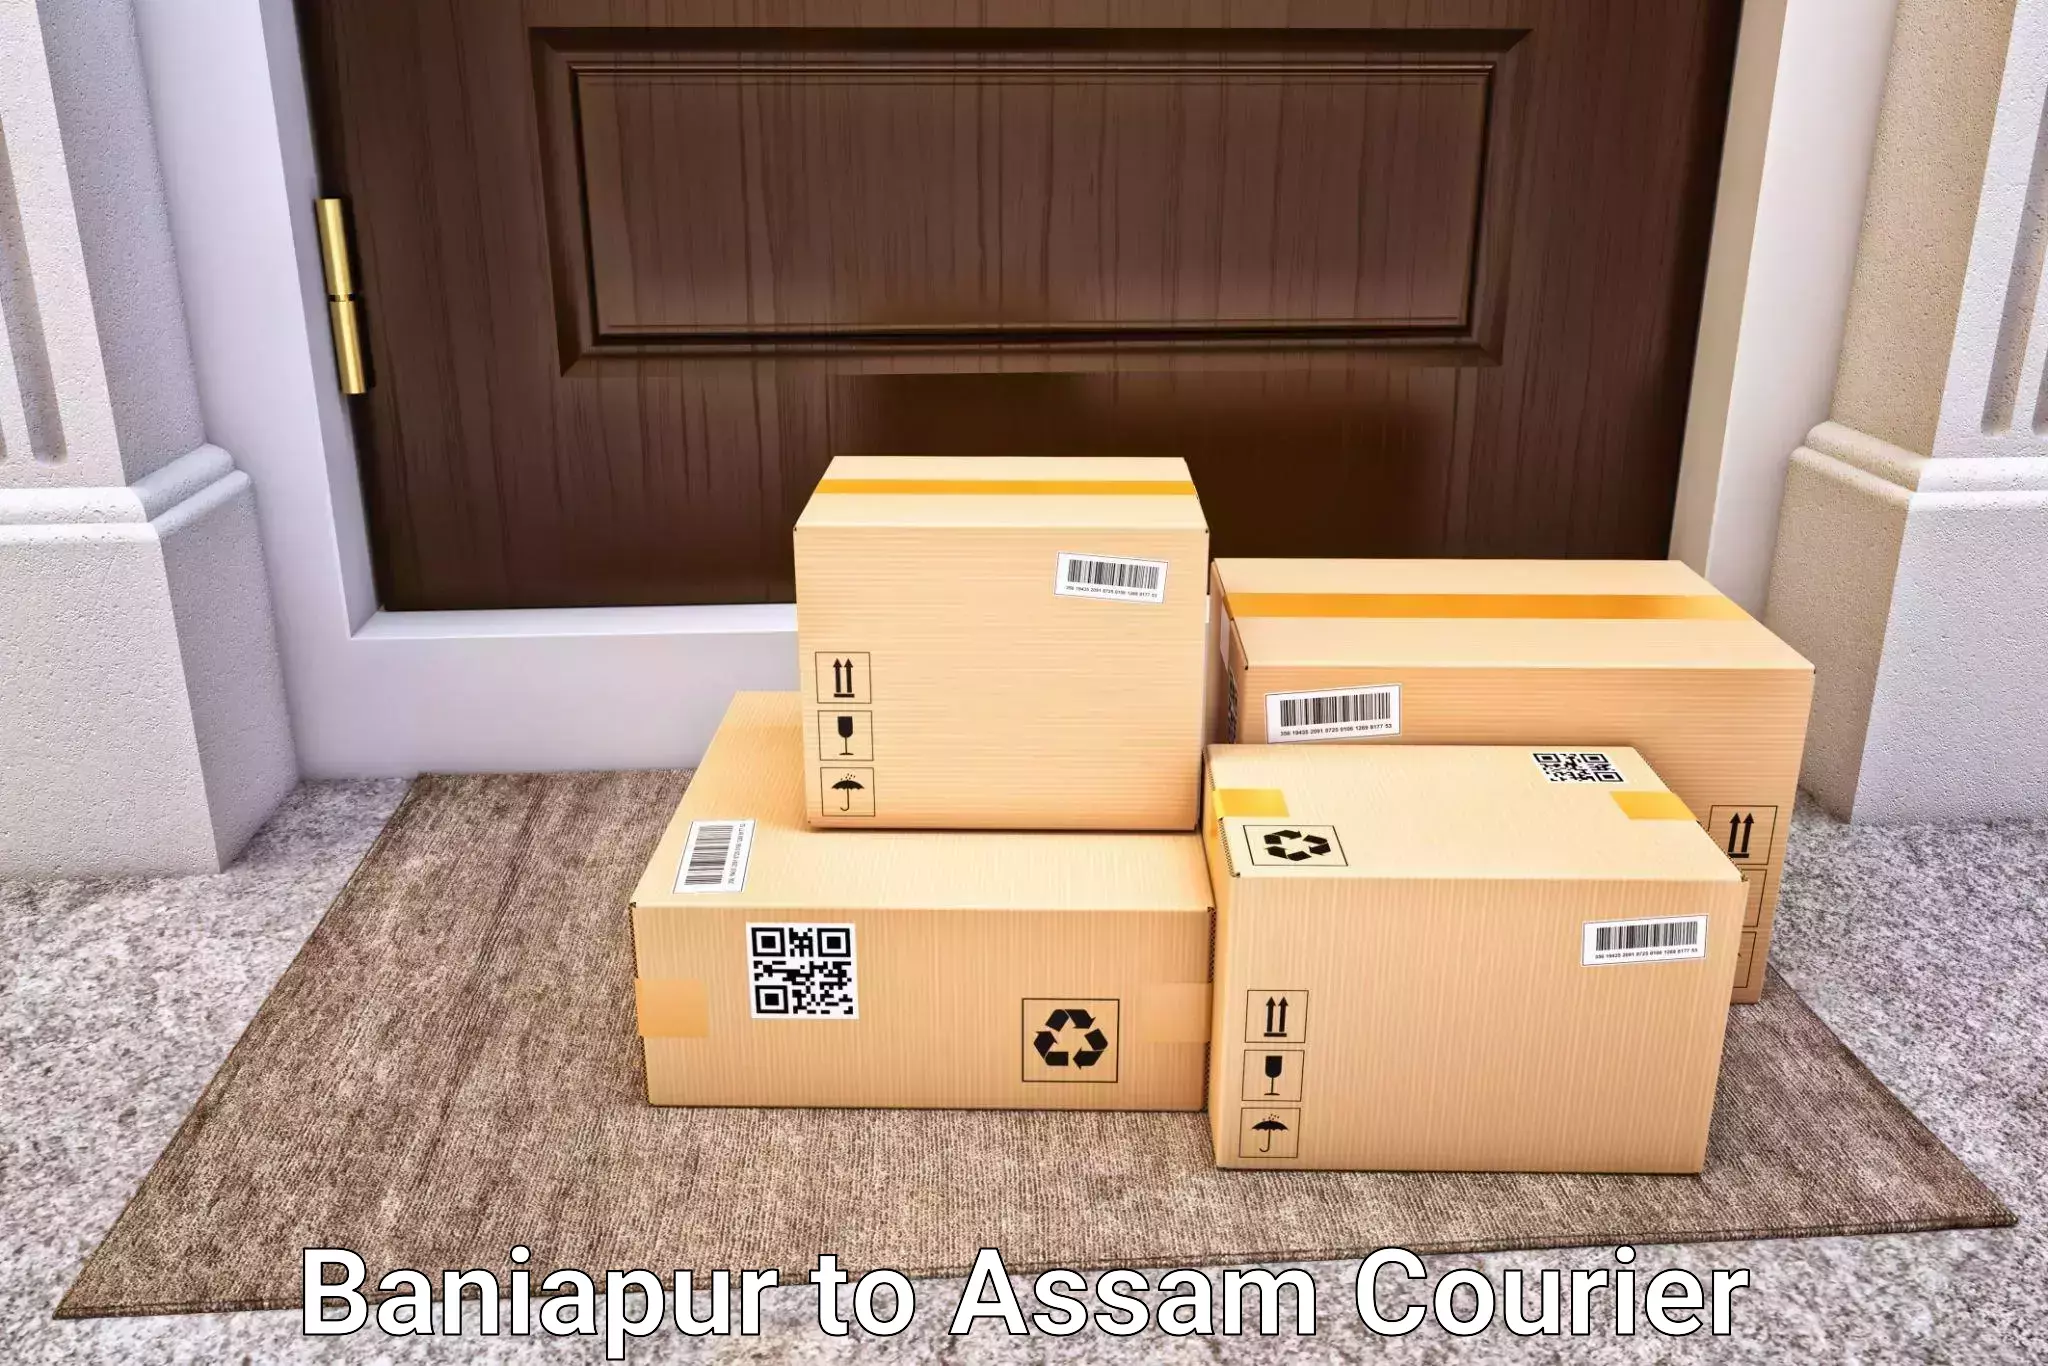 Luggage delivery optimization Baniapur to Sadiya